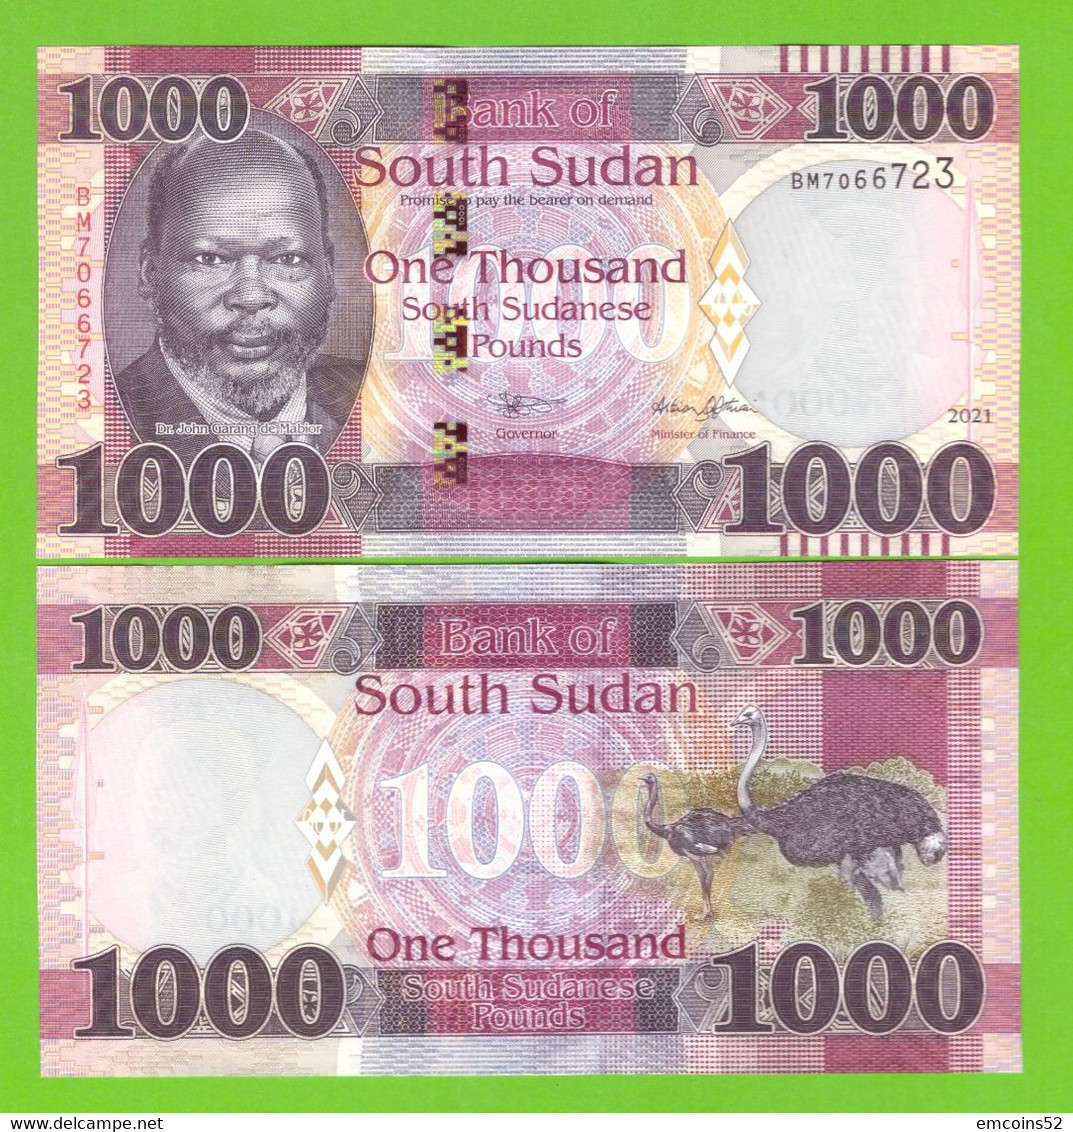 SOUTH SUDAN 1000 POUNDS 2021 P-17 UNC NEW DATE - South Sudan